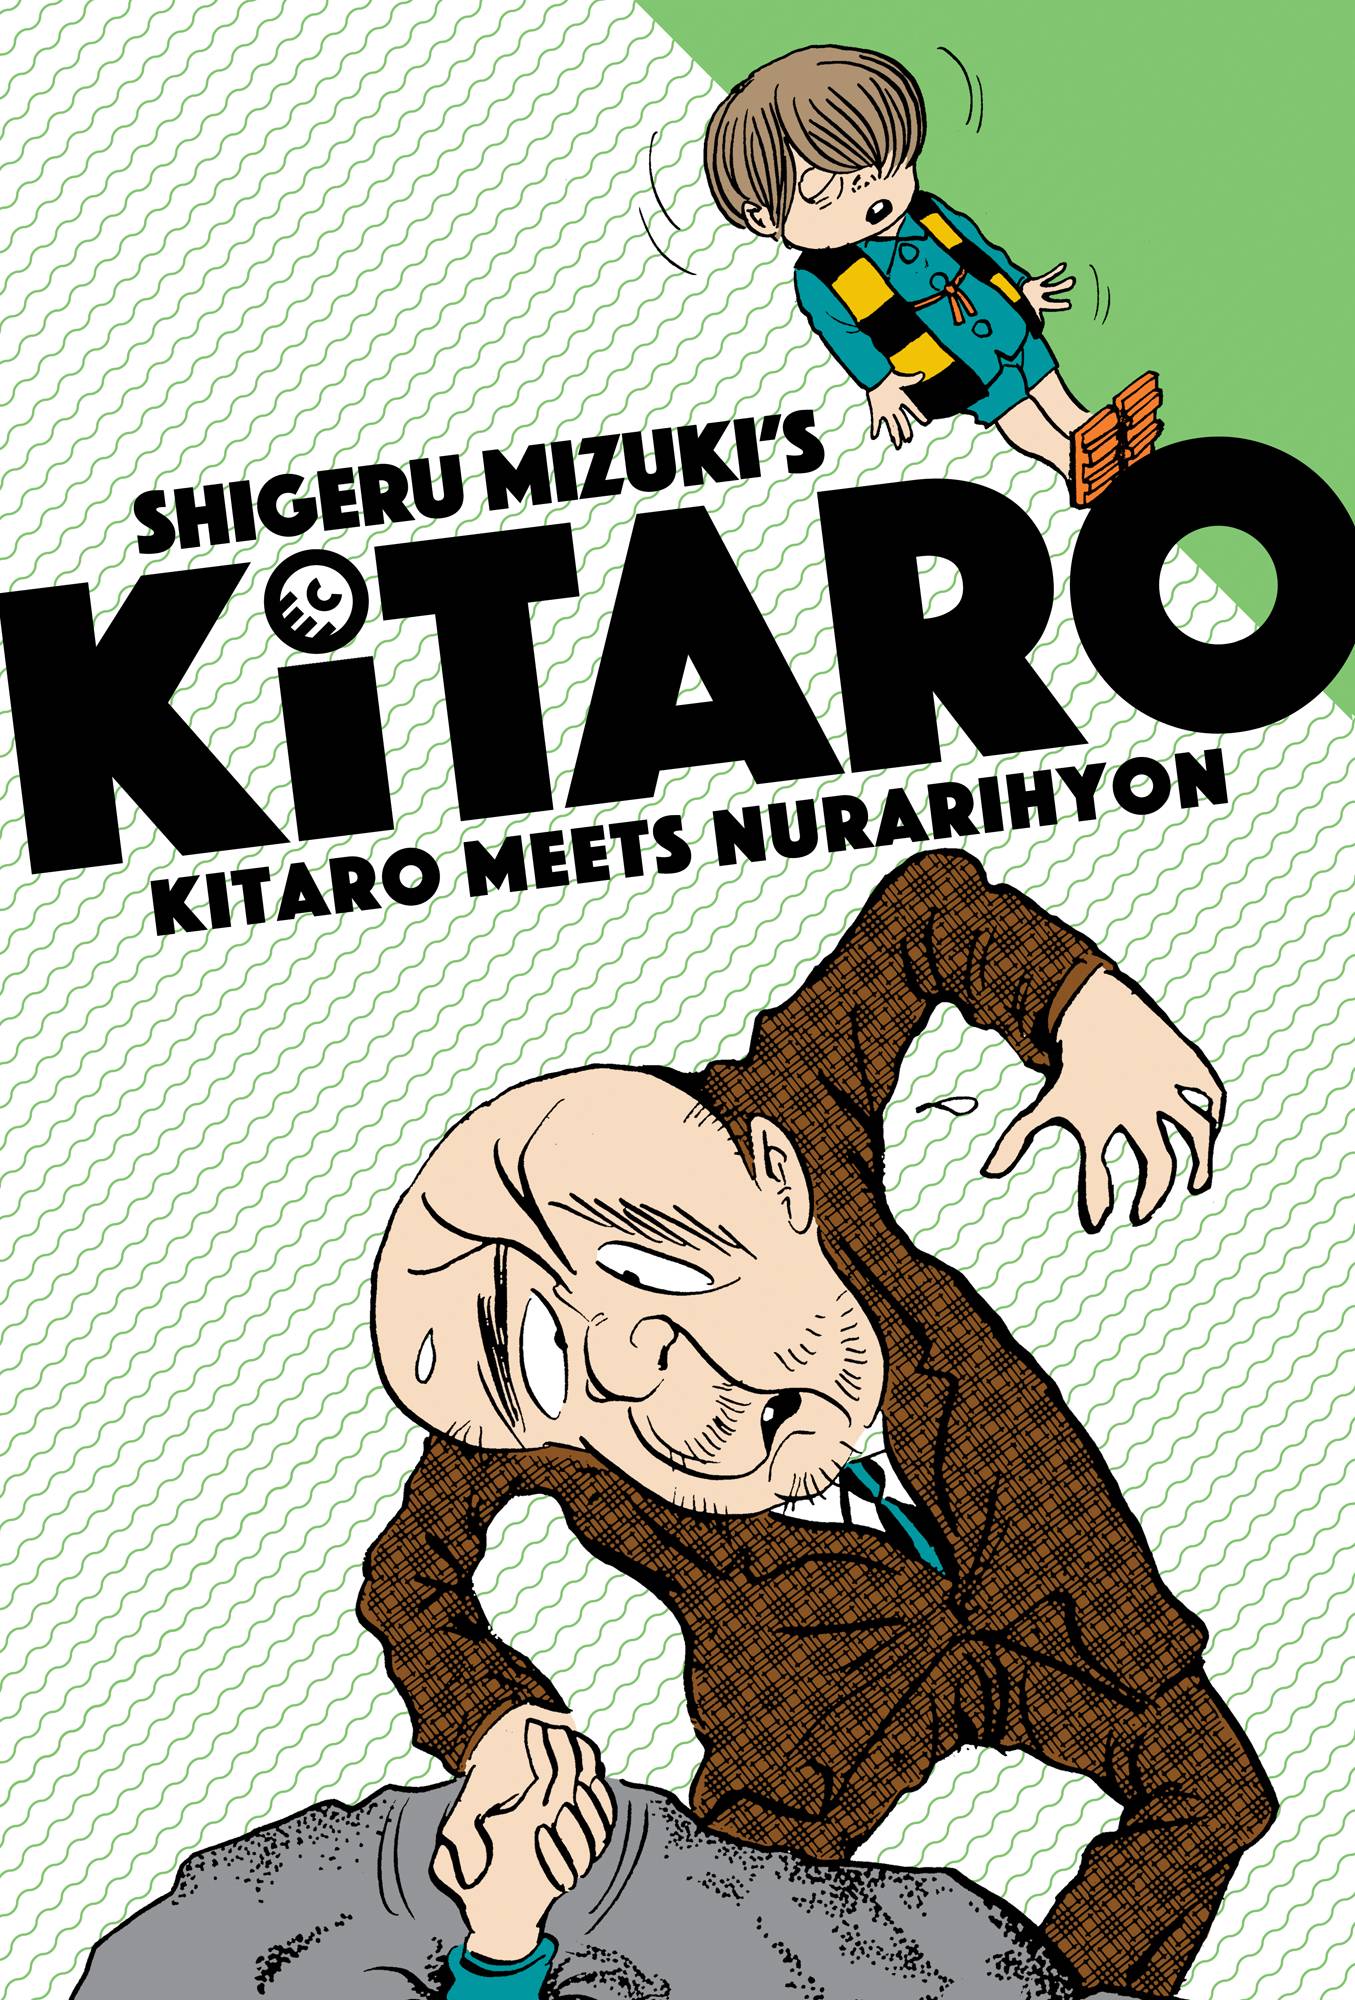 Kitaro Vol. 02 Meets Nurarihyo (C: 0-0-1)